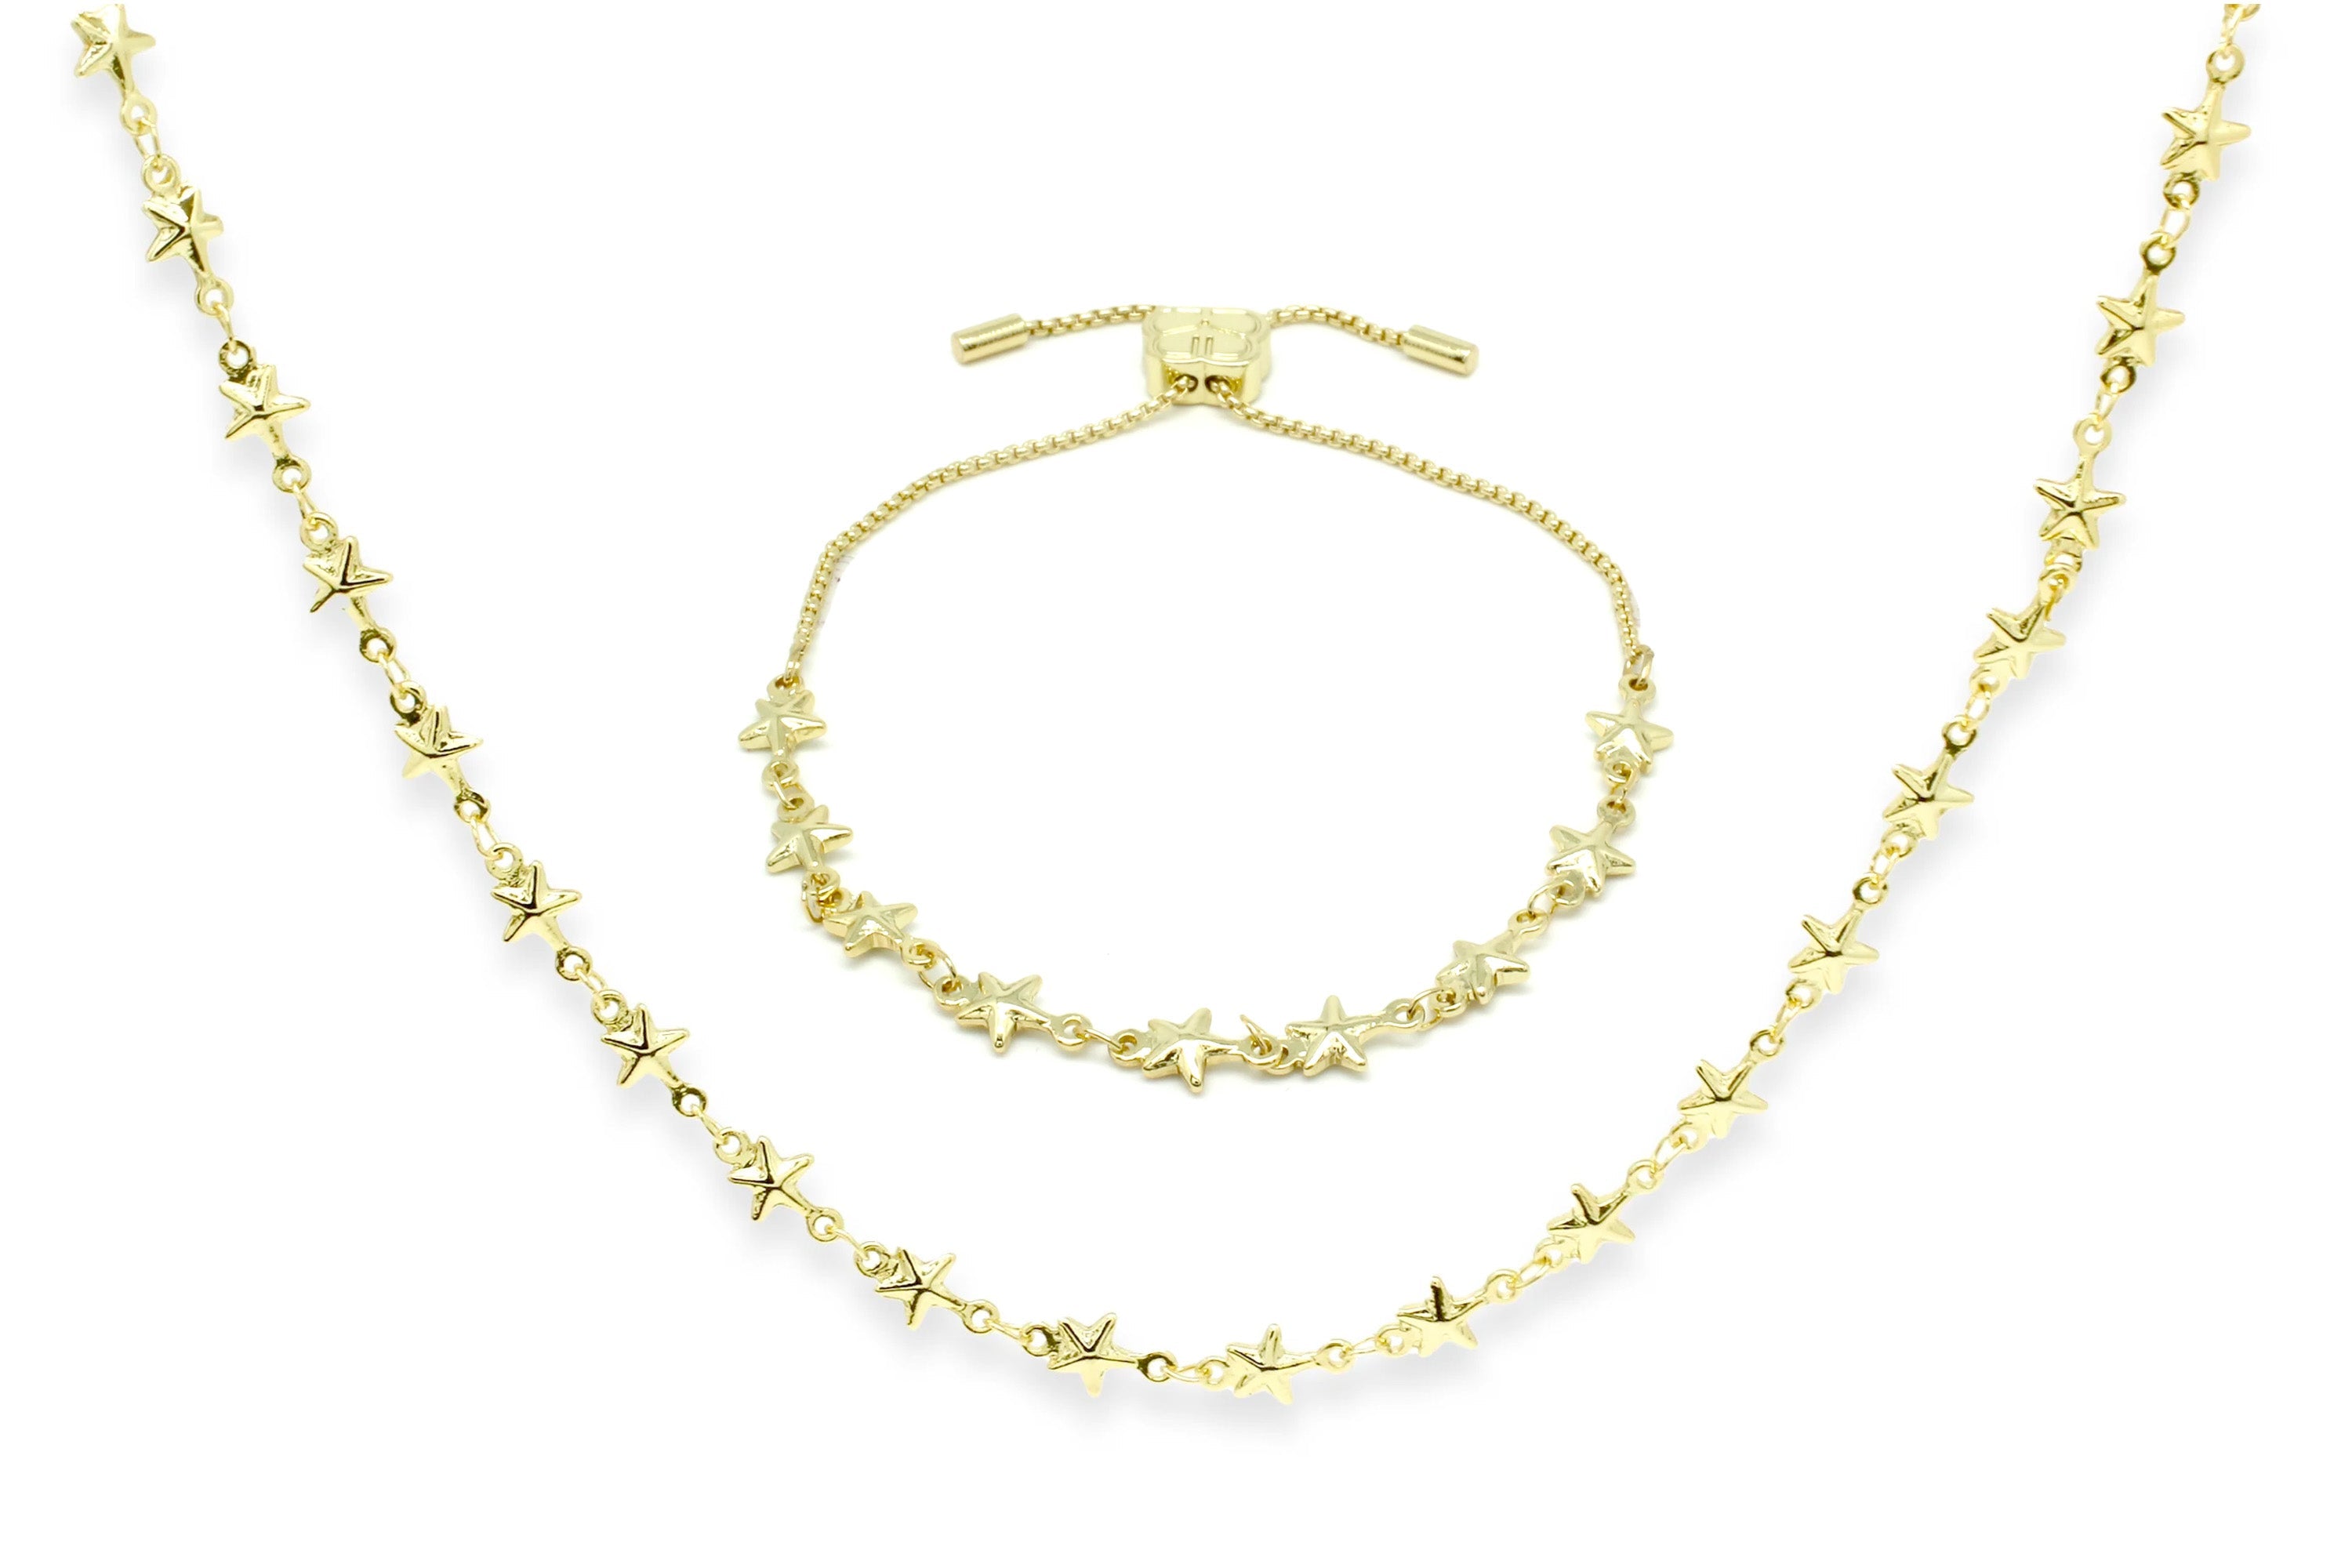 SuperStar Necklace & Bracelet Gift Set